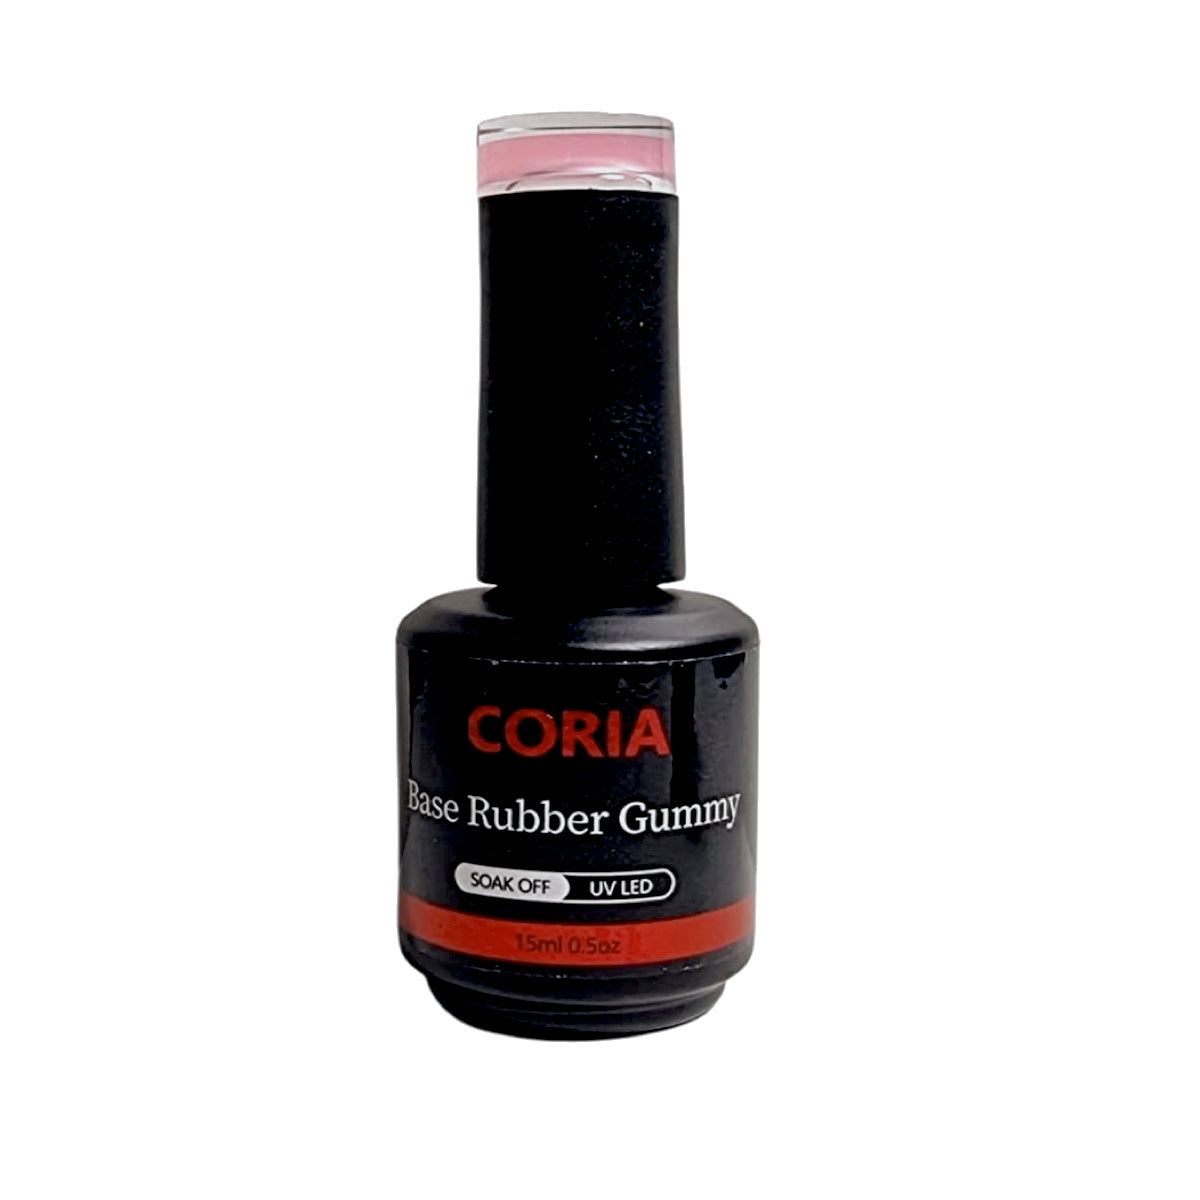 Baza Rubber Gummy Coria 037 Perfect French Dark Nude 15 ml